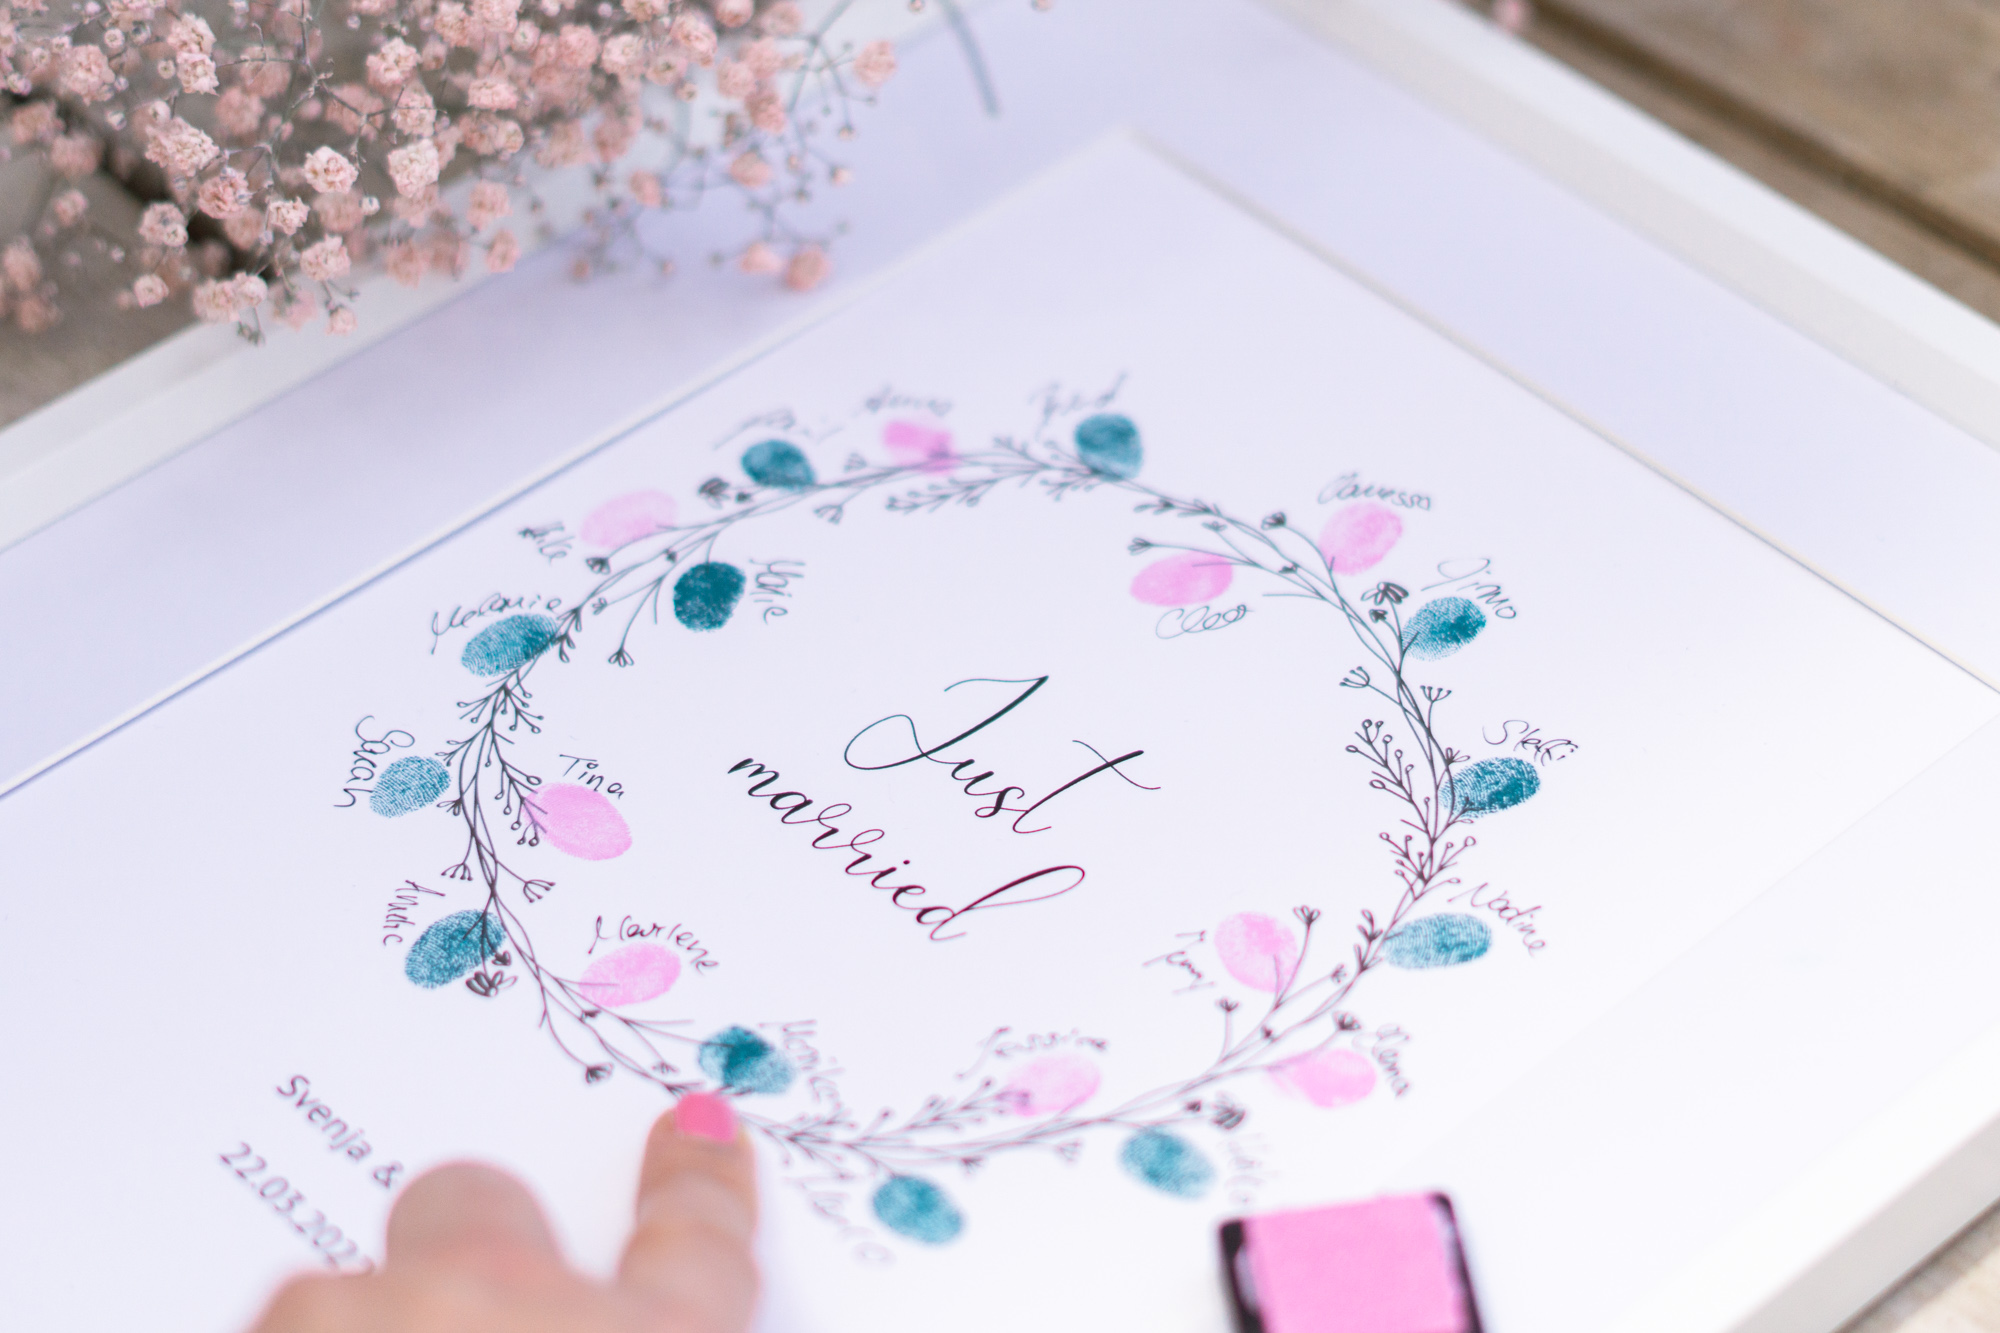 Gästebuch Idee zur Hochzeit mit Fingerabdrücken von den Gästen